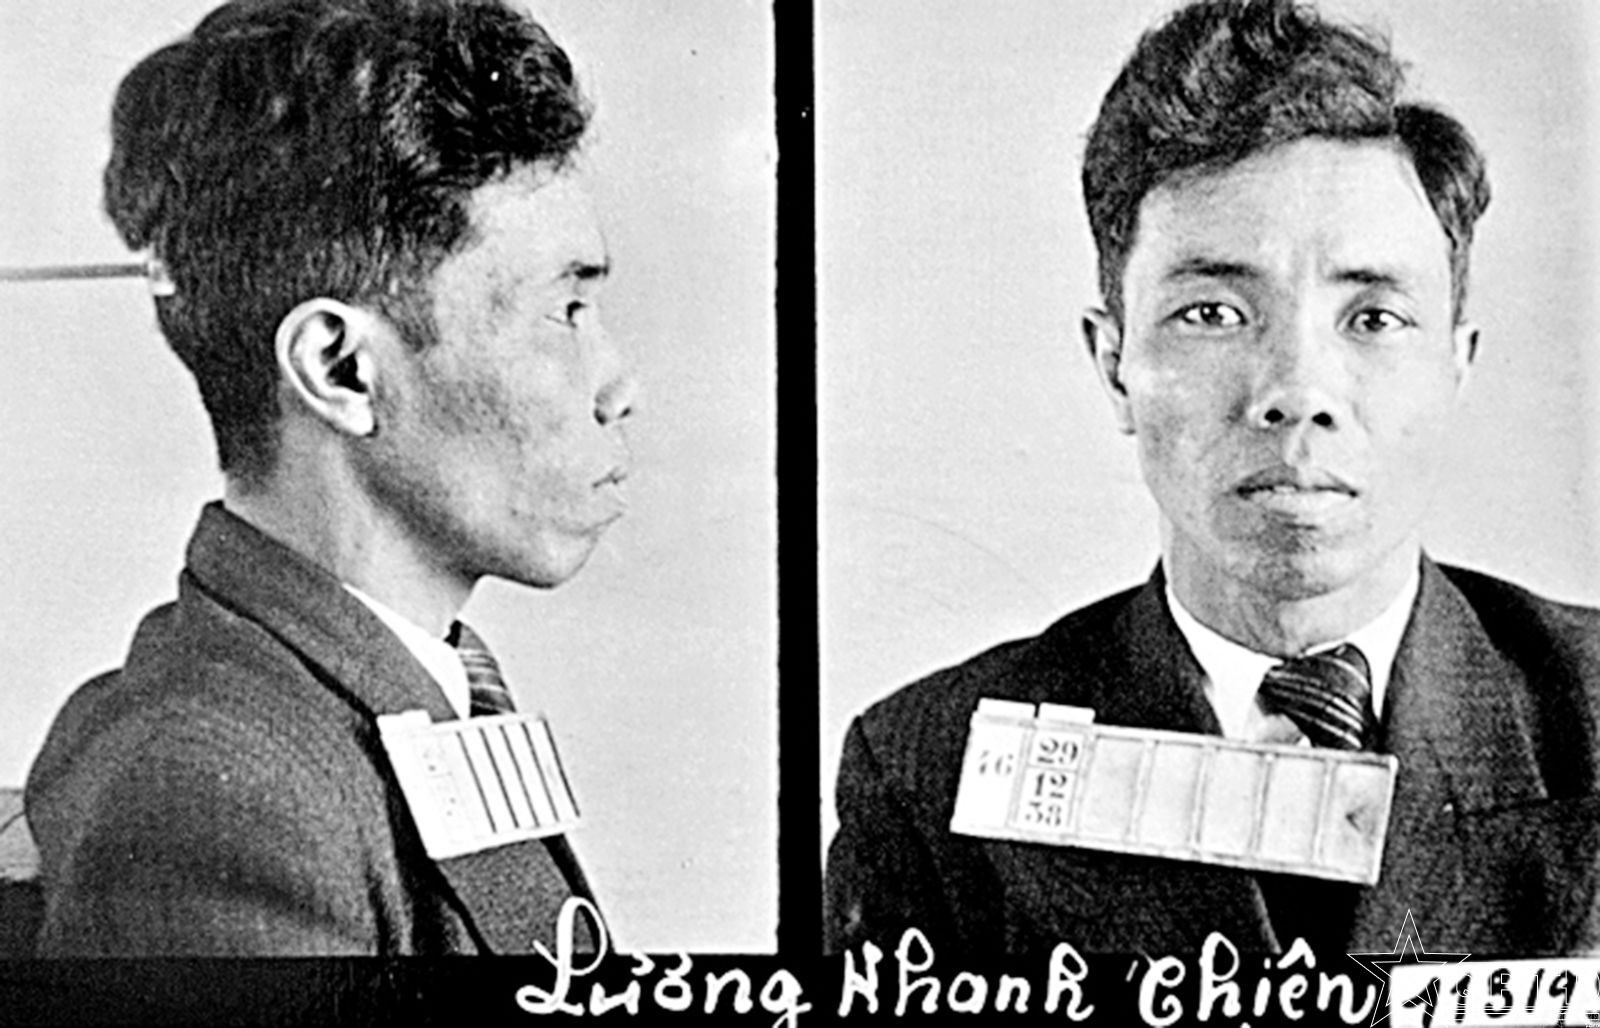 Ảnh đồng chí Lương Khánh Thiện do Mật thám Pháp chụp trước khi bị bắt giam tại Nhà tù Hỏa Lò.